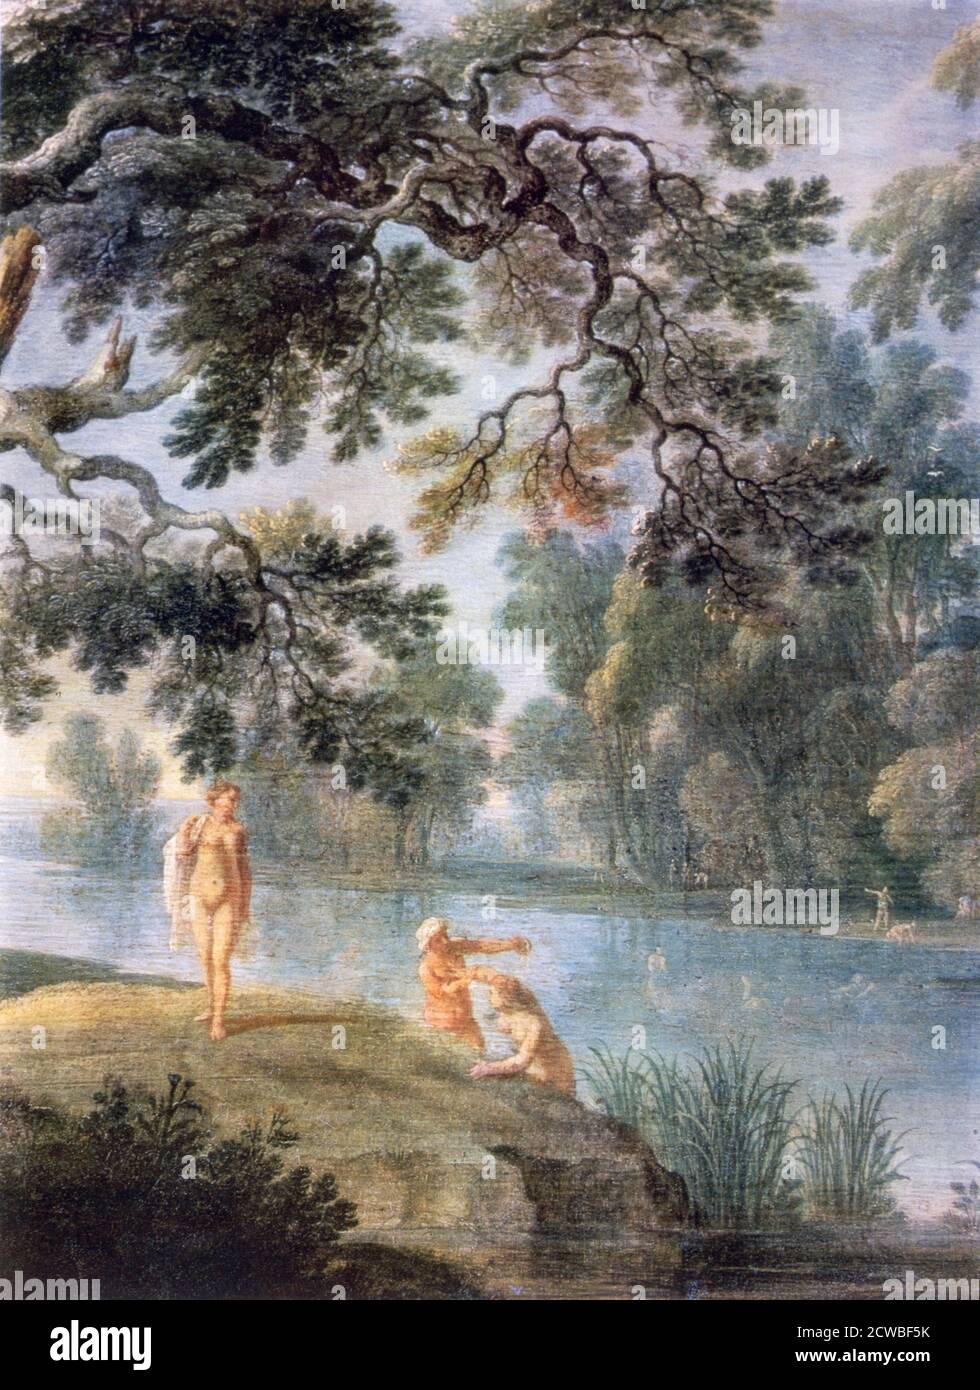 Nymphes 'baignade', (détail), c1620-1652. Artiste: Alexander Keirincx. Alexander Keirincx(1600-1652) était un peintre paysagiste flamand connu pour ses paysages boisés avec des figures ainsi que ses peintures de châteaux anglais et de maisons de campagne. Banque D'Images